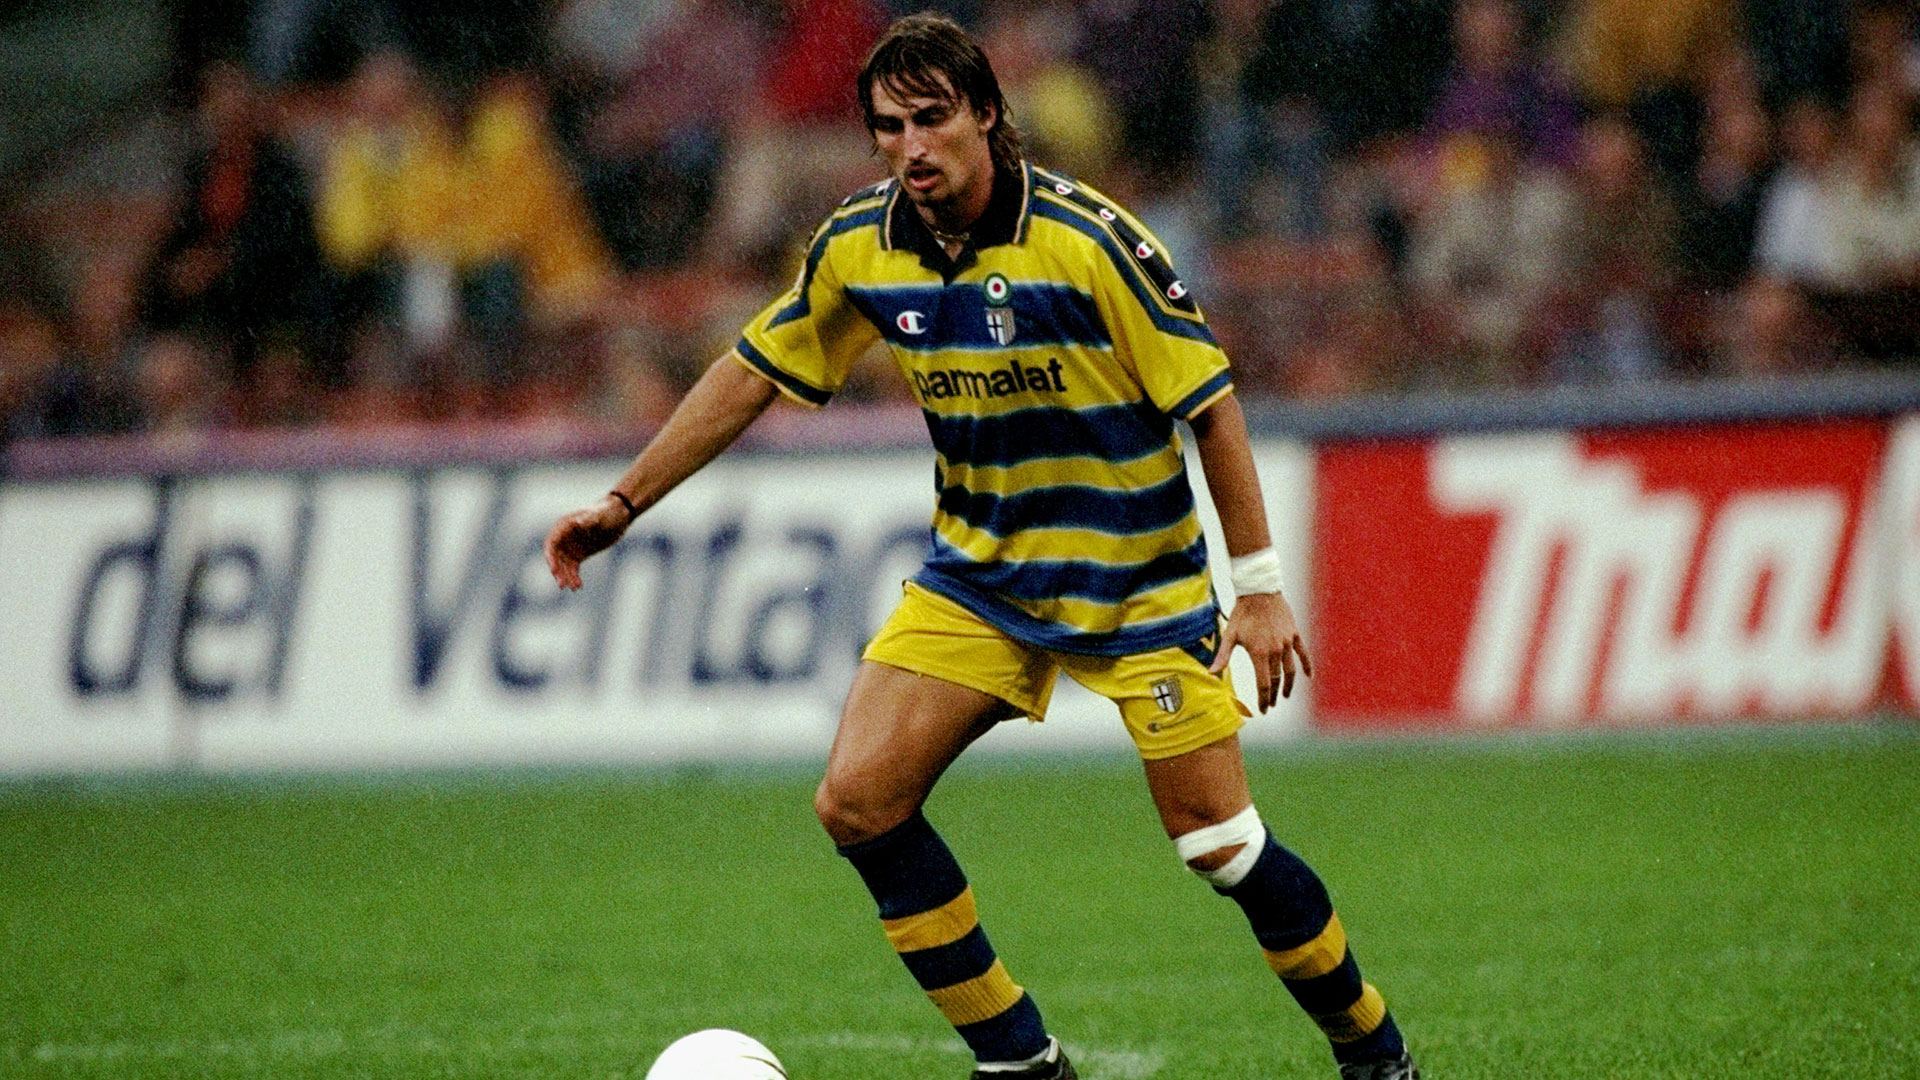 Dino Baggio en el Parma en 1999 (Claudio Villa /Allsport)